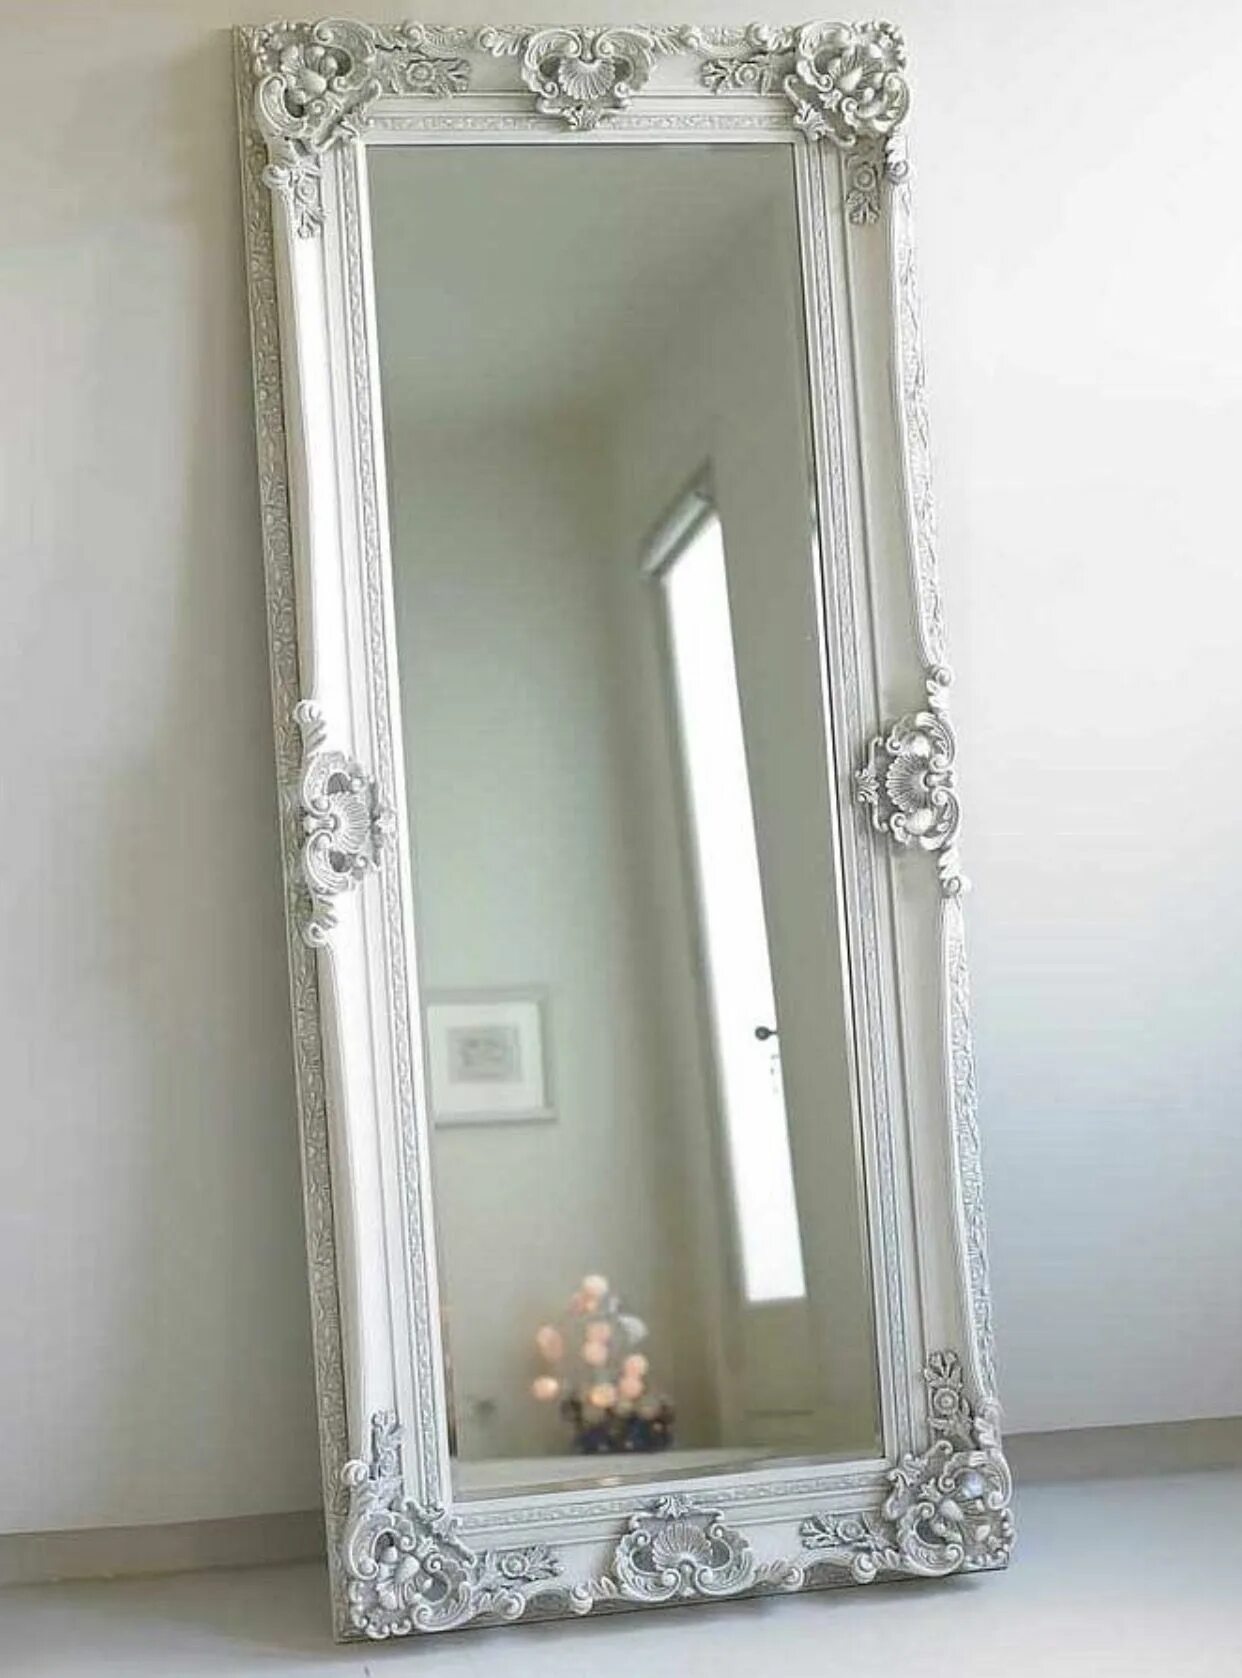 Напольное зеркало Лоренцо Soho Silver. Напольное зеркало Венето Florentine Silver/19. Рамка для зеркала. Зеркало настенное в раме. Купить зеркало во владимире